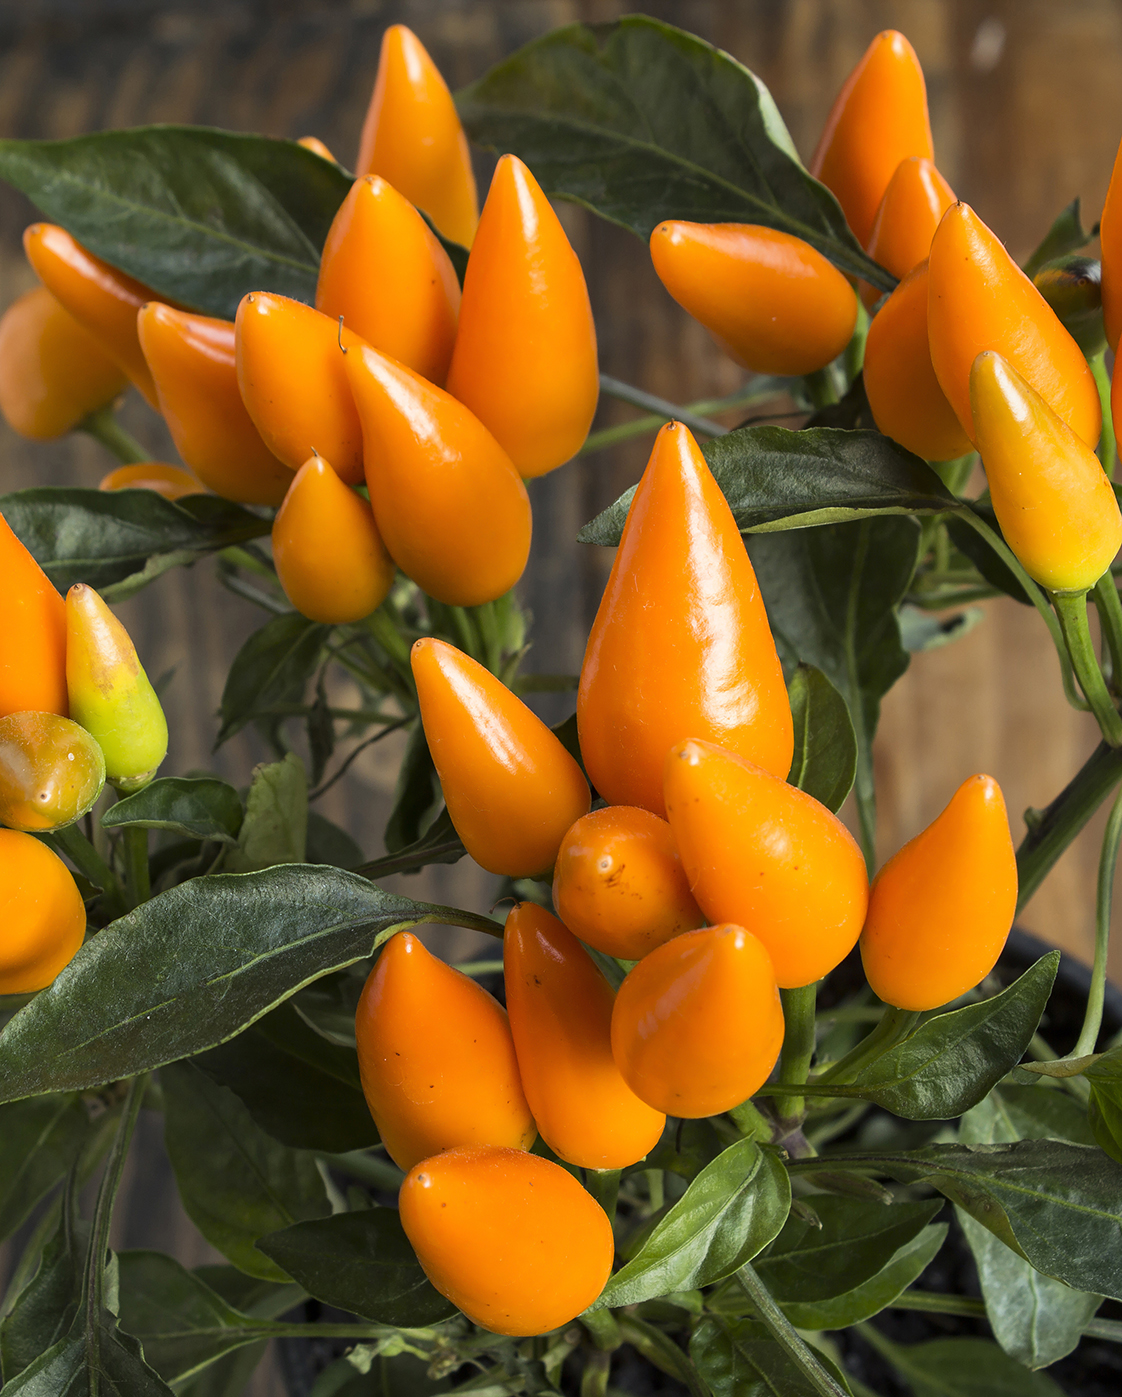 Seedeo® Chili Capela orange (Capsicum frutescens) BIO